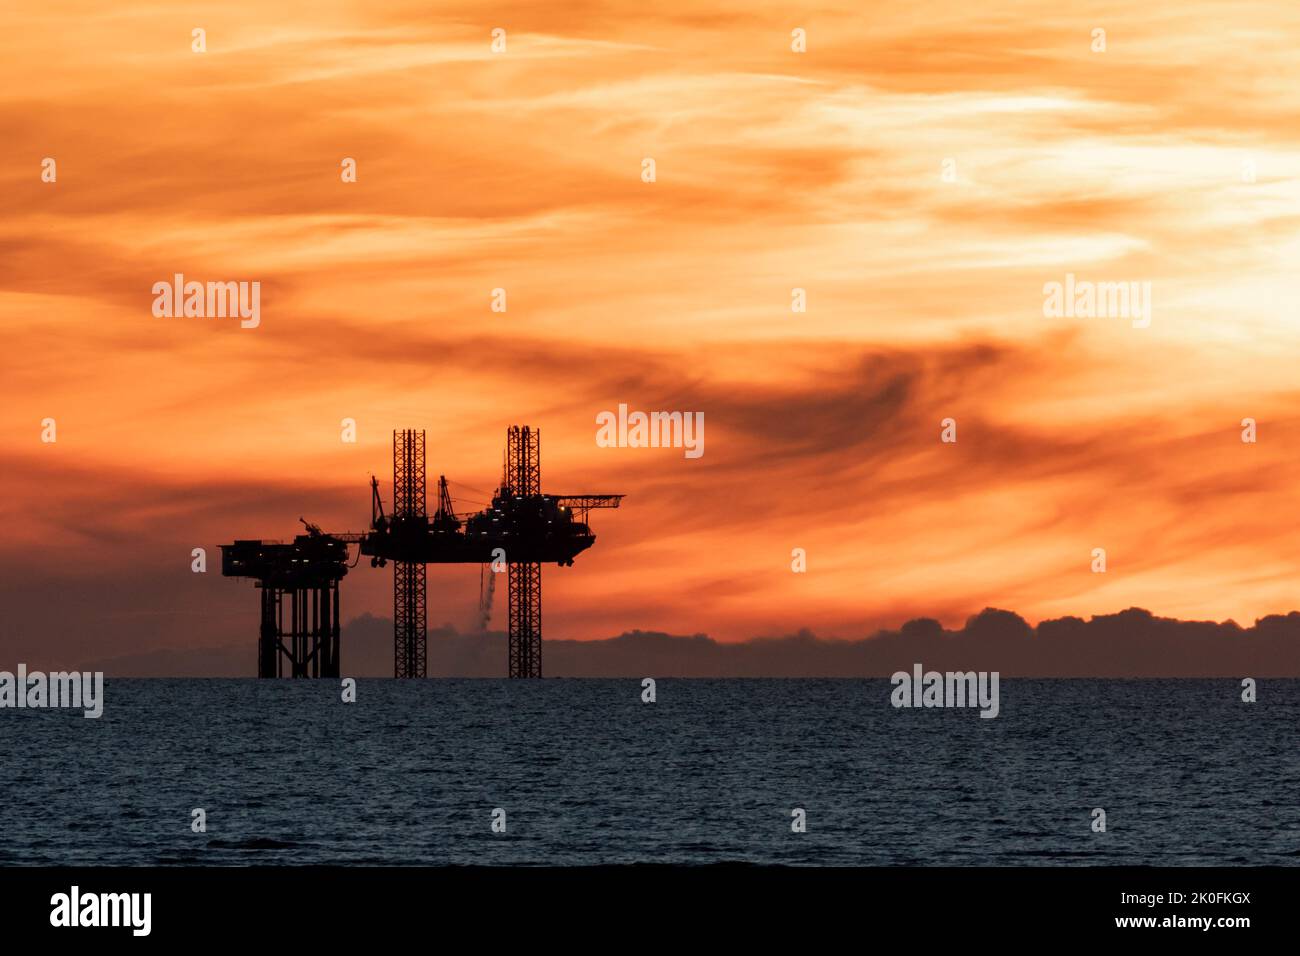 Puesta de sol de plataformas petrolíferas, puesta de sol sobre la plataforma de satélites Lennox en el mar de Irlanda, parte de las plataformas petrolíferas y de gas del complejo Douglas en la bahía de Liverpool, Inglaterra, Reino Unido Foto de stock